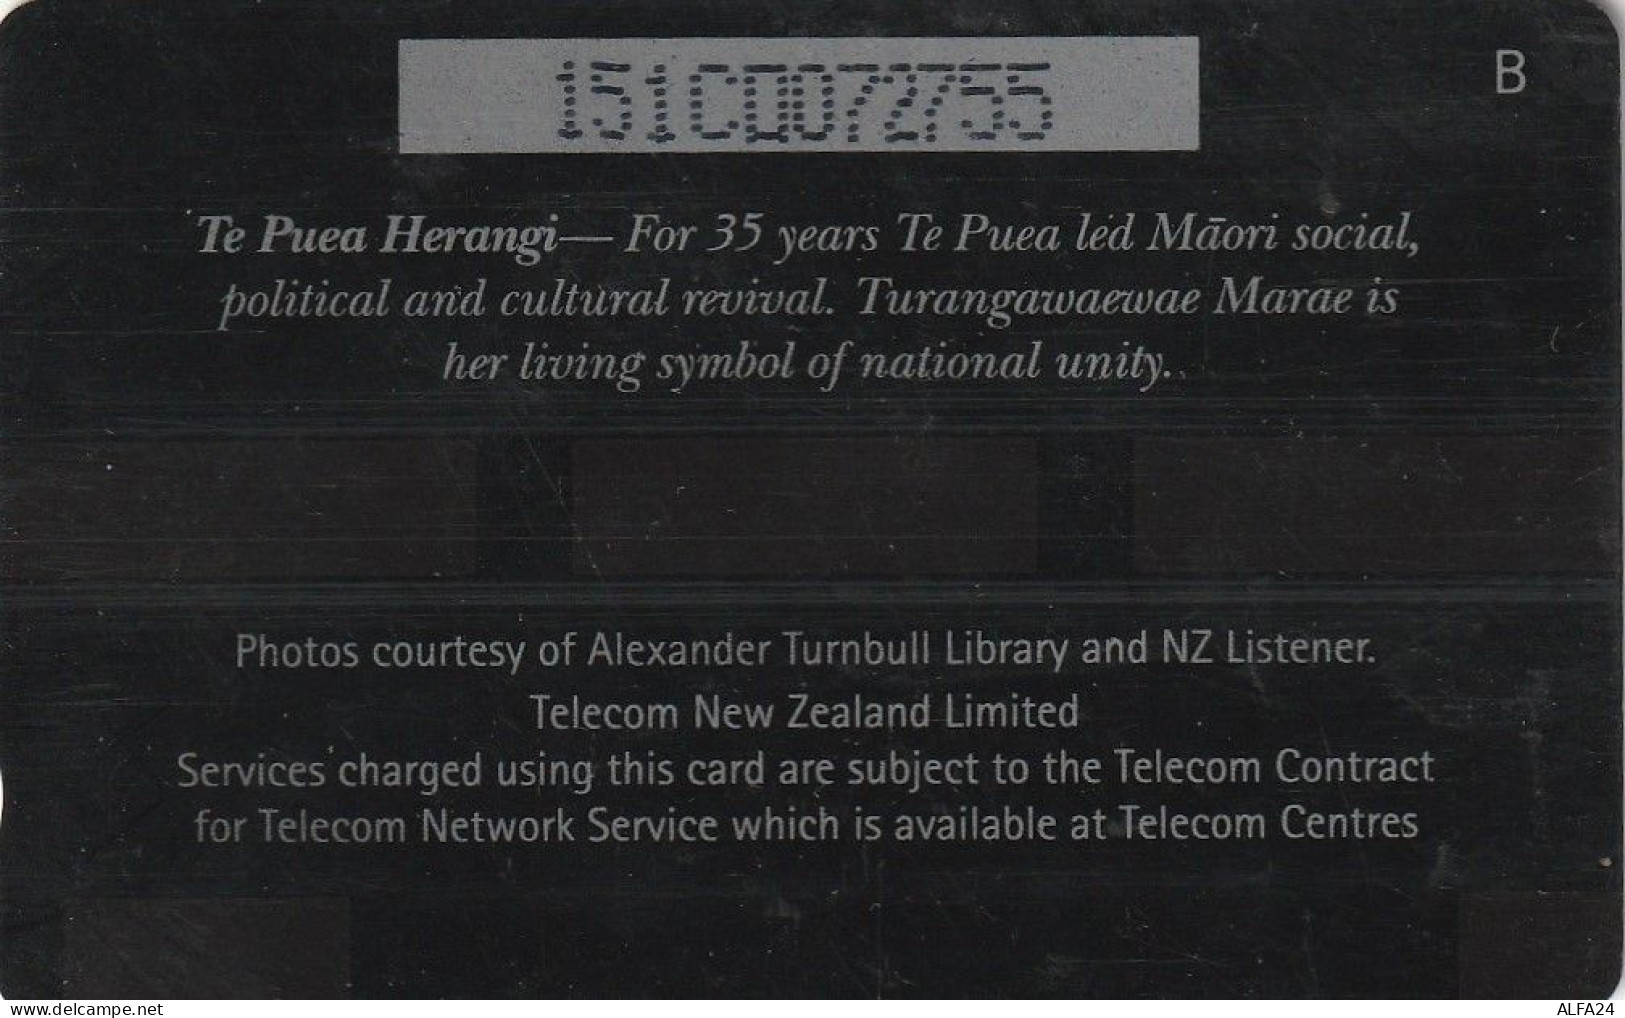 PHONE CARD NUOVA ZELANDA  (CZ708 - Neuseeland